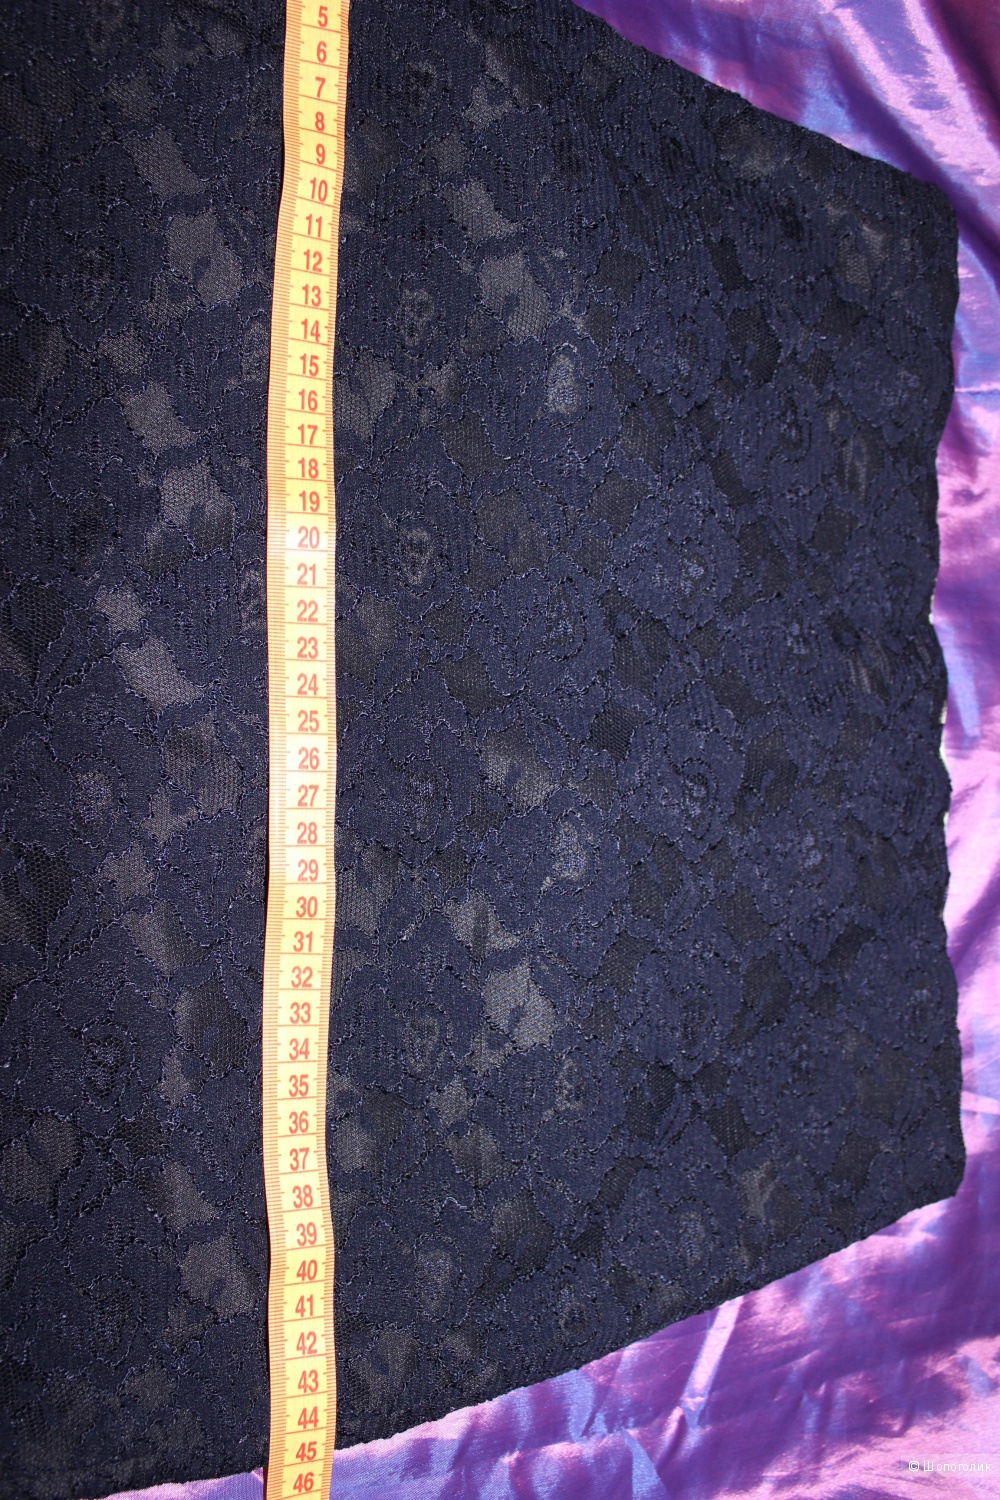 Тёмно-синяя кружевная юбочка, Merci, Италия. На 46 размер, длина до колена.